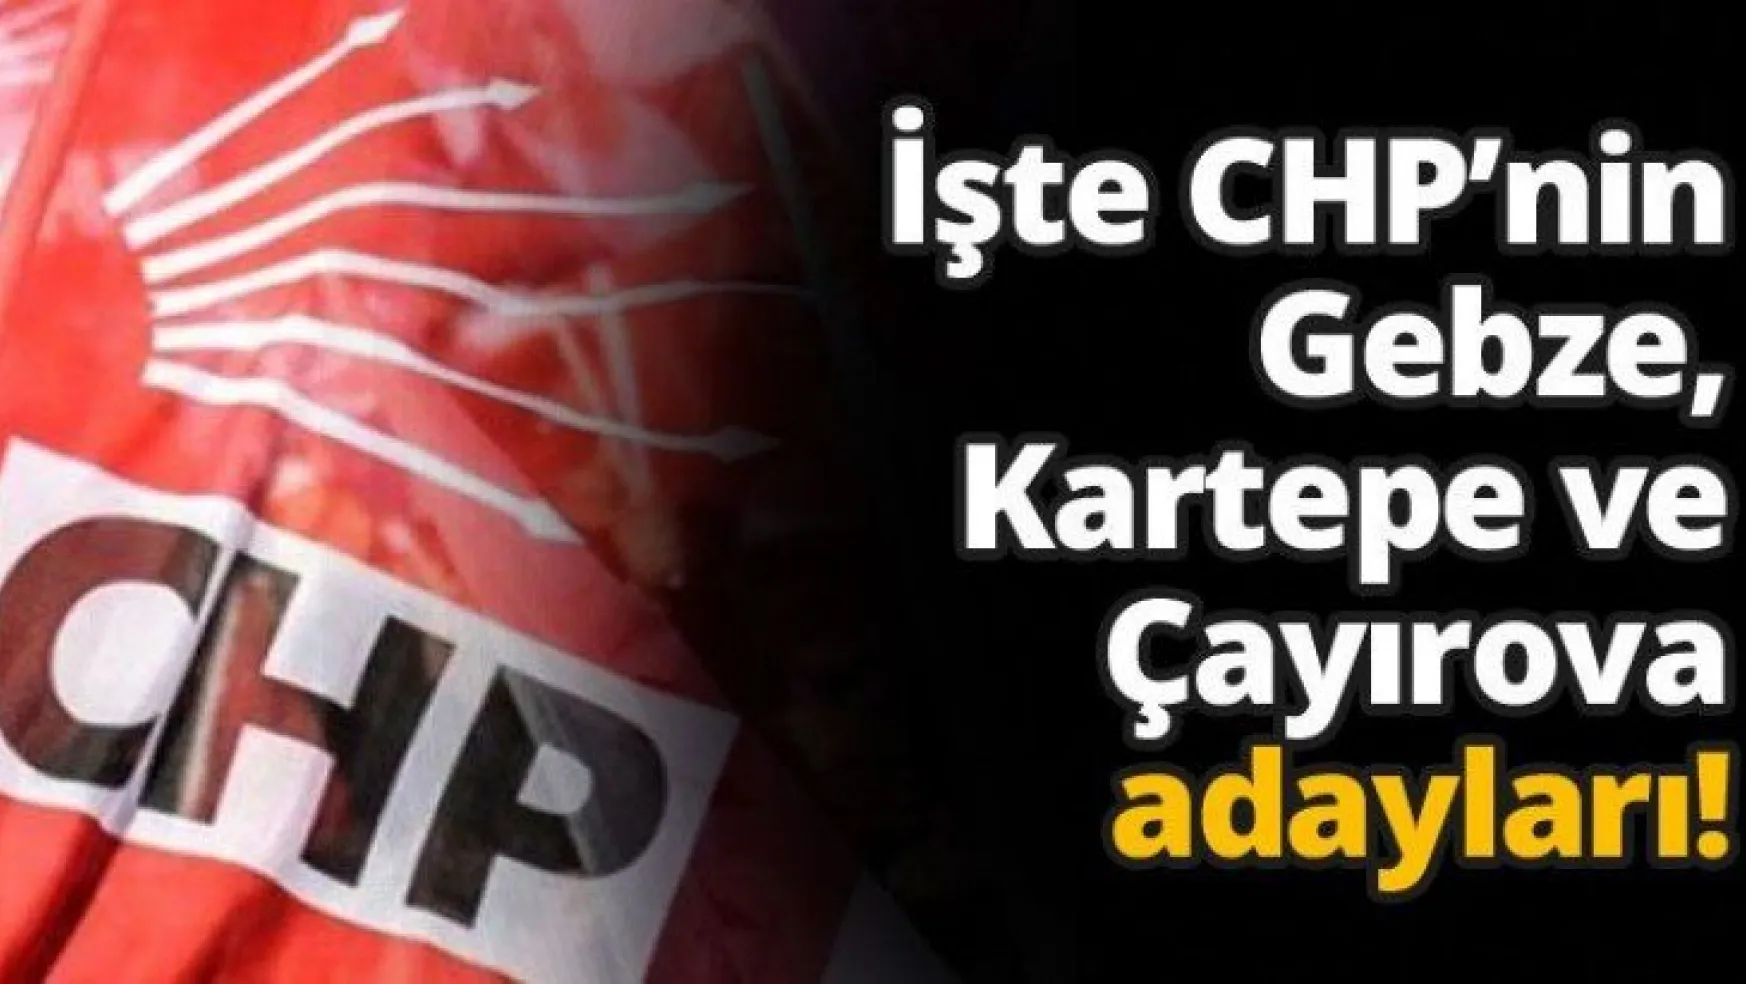 İşte CHP'nin Gebze, Kartepe ve Çayırova adayları!